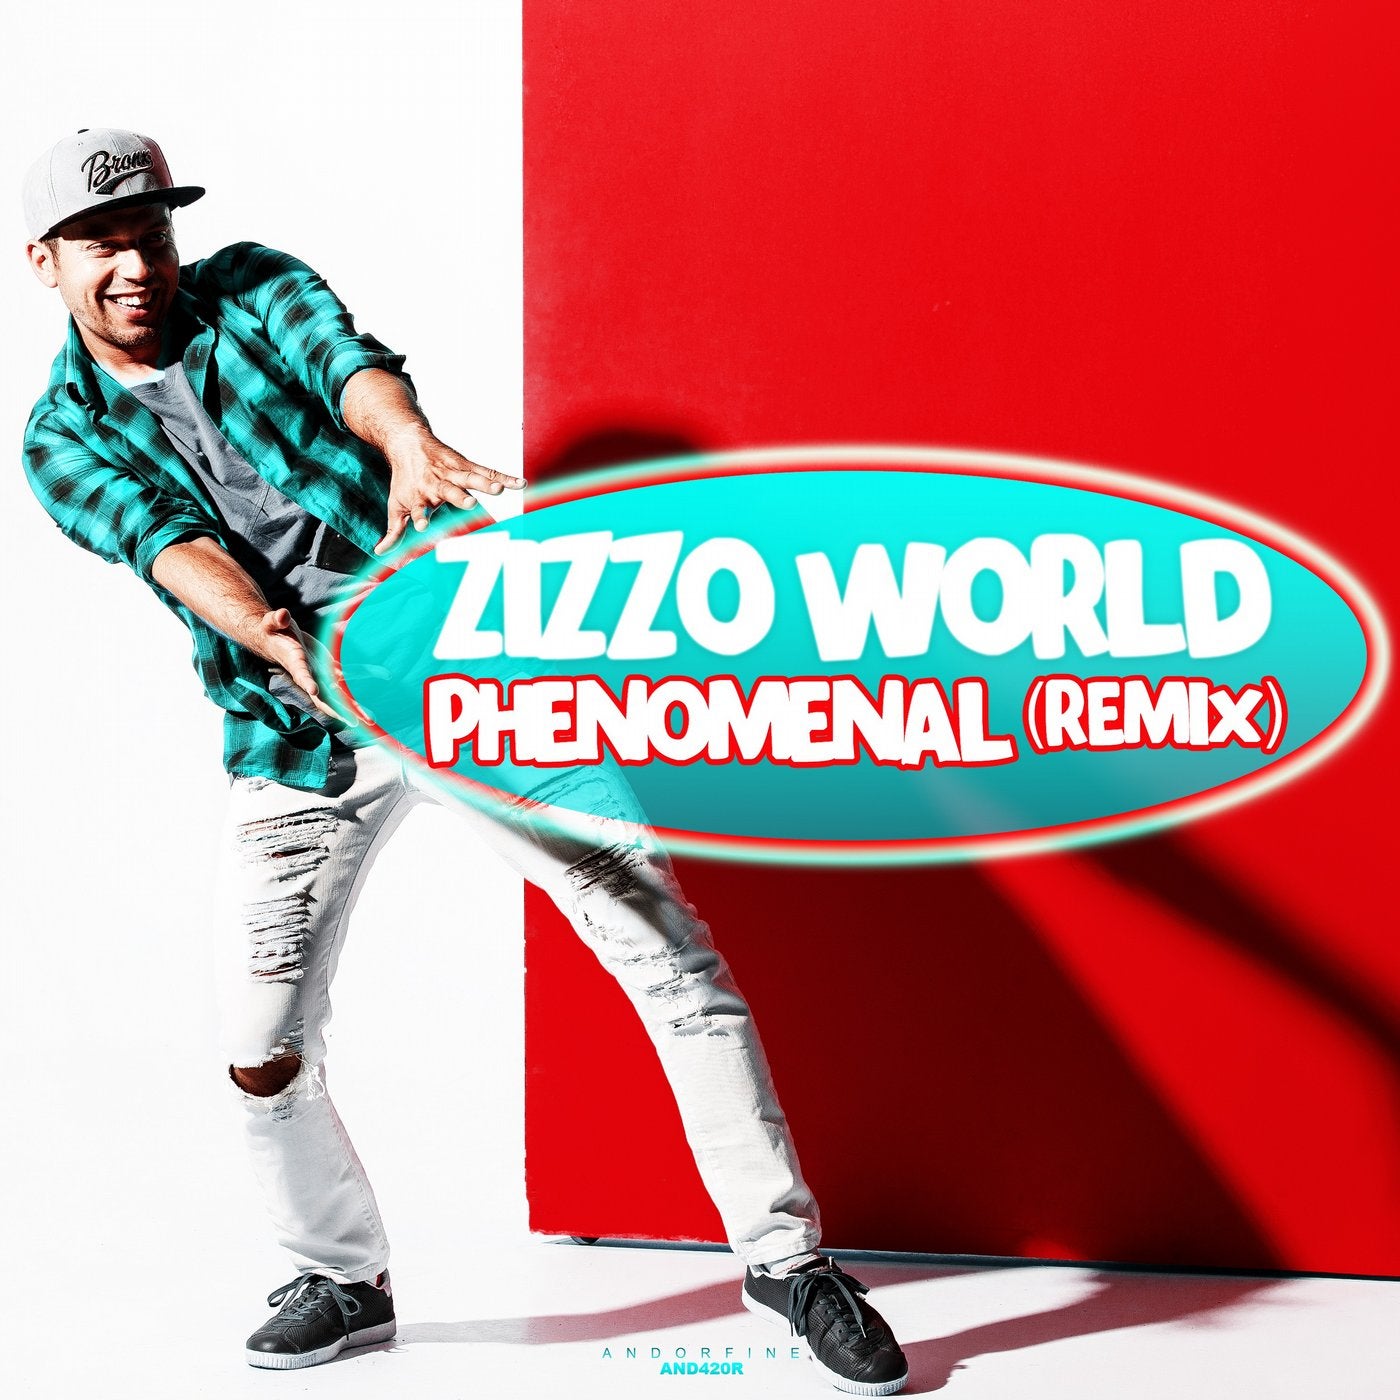 Phenomenal (Remix)